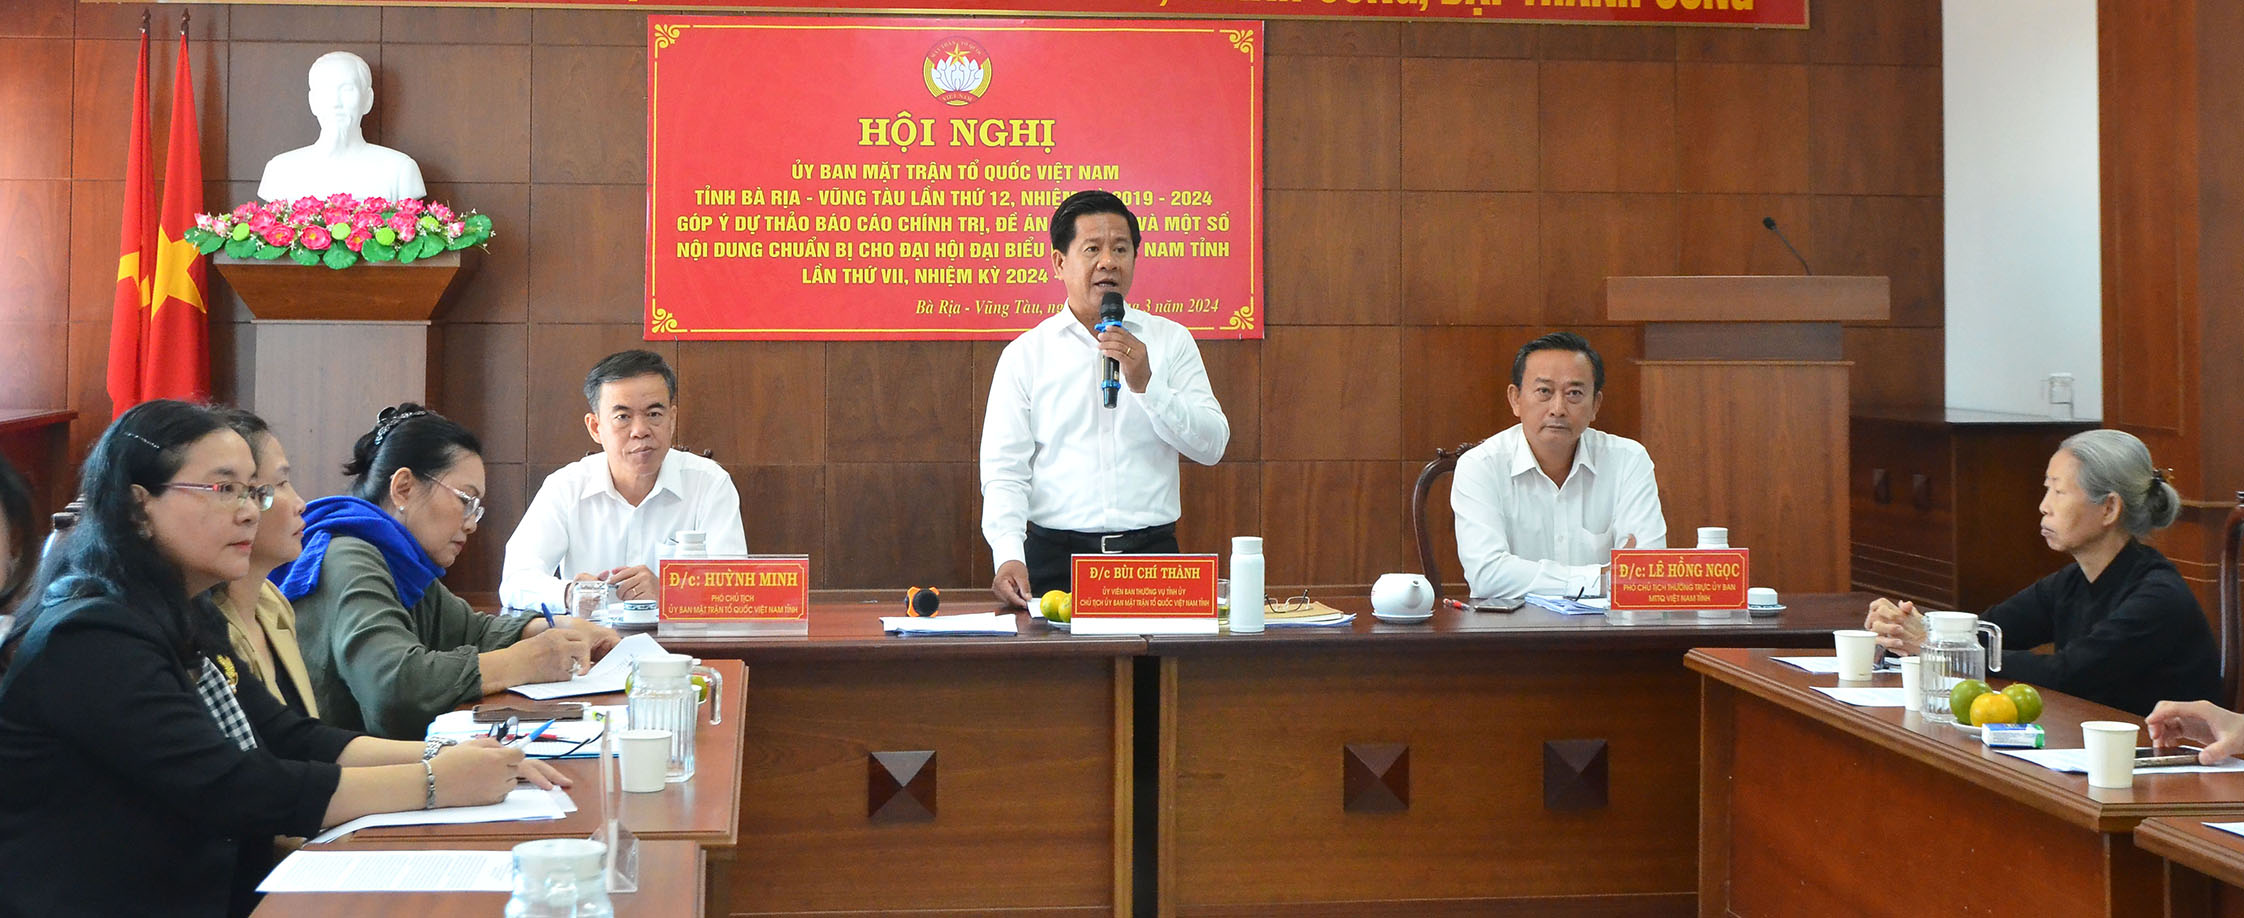 Ông Bùi Chí Thành, Chủ tịch UBMTTQ Việt Nam tỉnh phát biểu tại hội nghị.